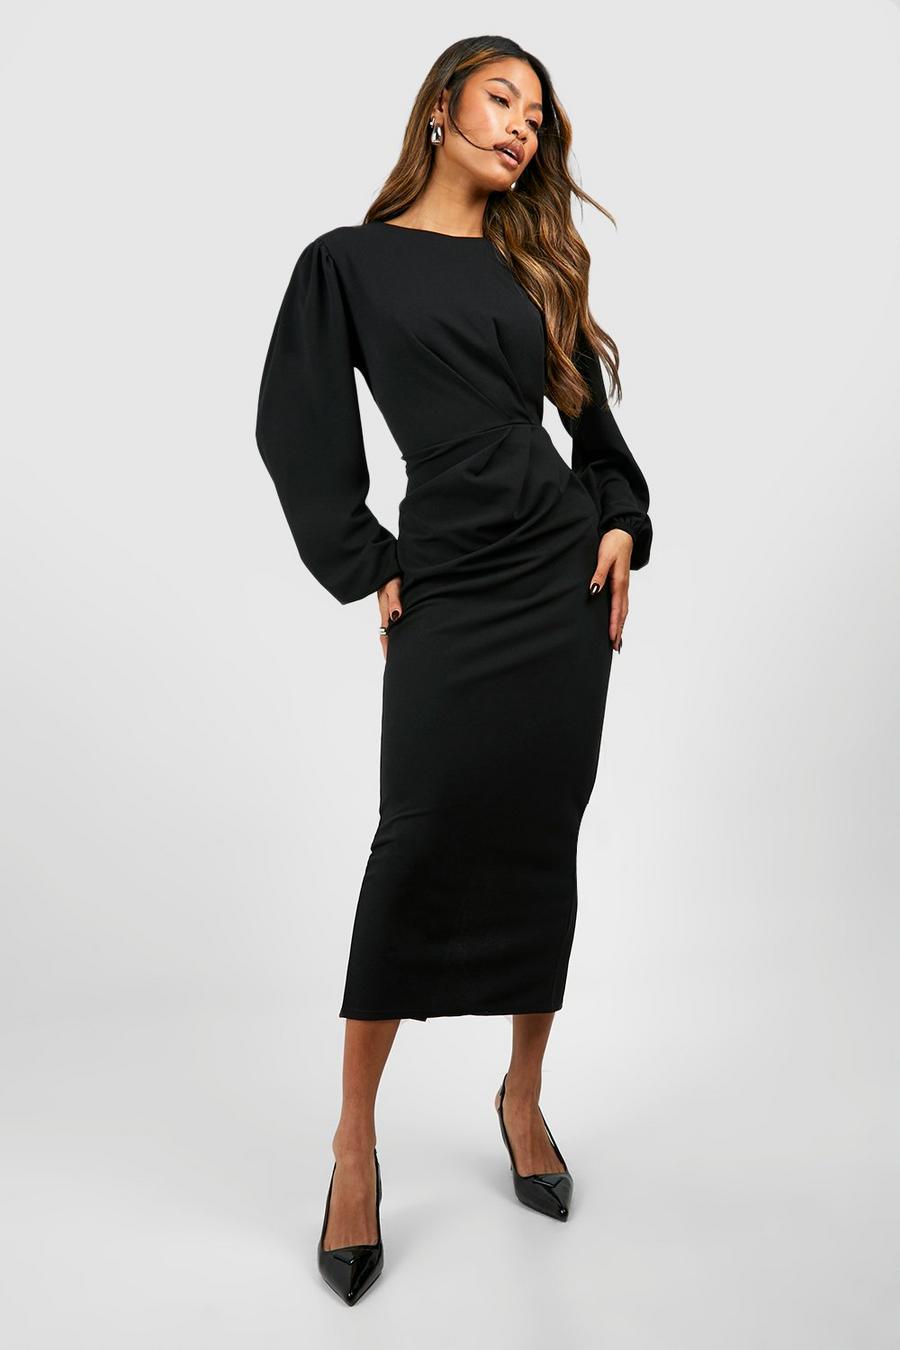 Black Drape Side Volume Sleeve Crepe Midaxi Dress